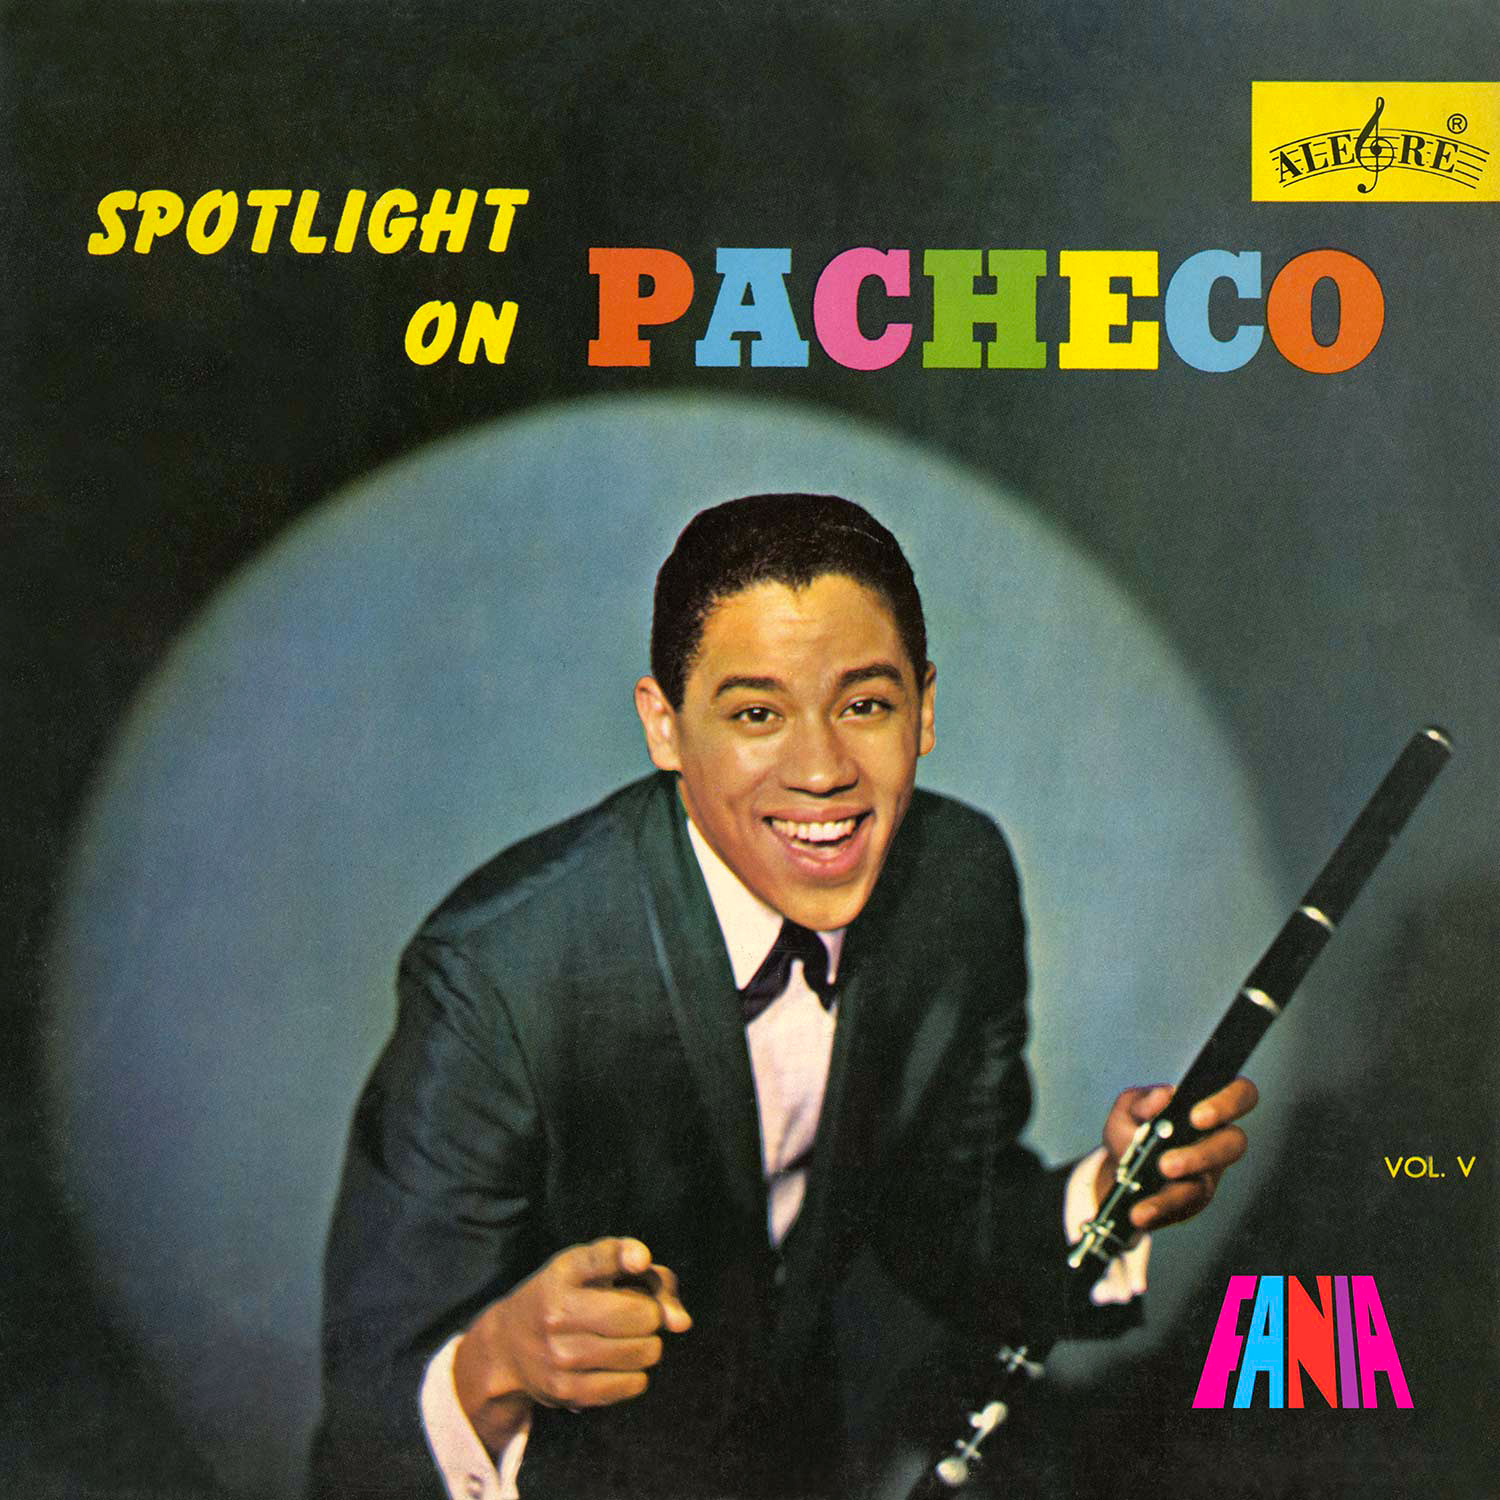 Foto de la portada de un álbum que muestra a un hombre vestido con traje, sosteniendo una flauta y apuntando a la cámara.